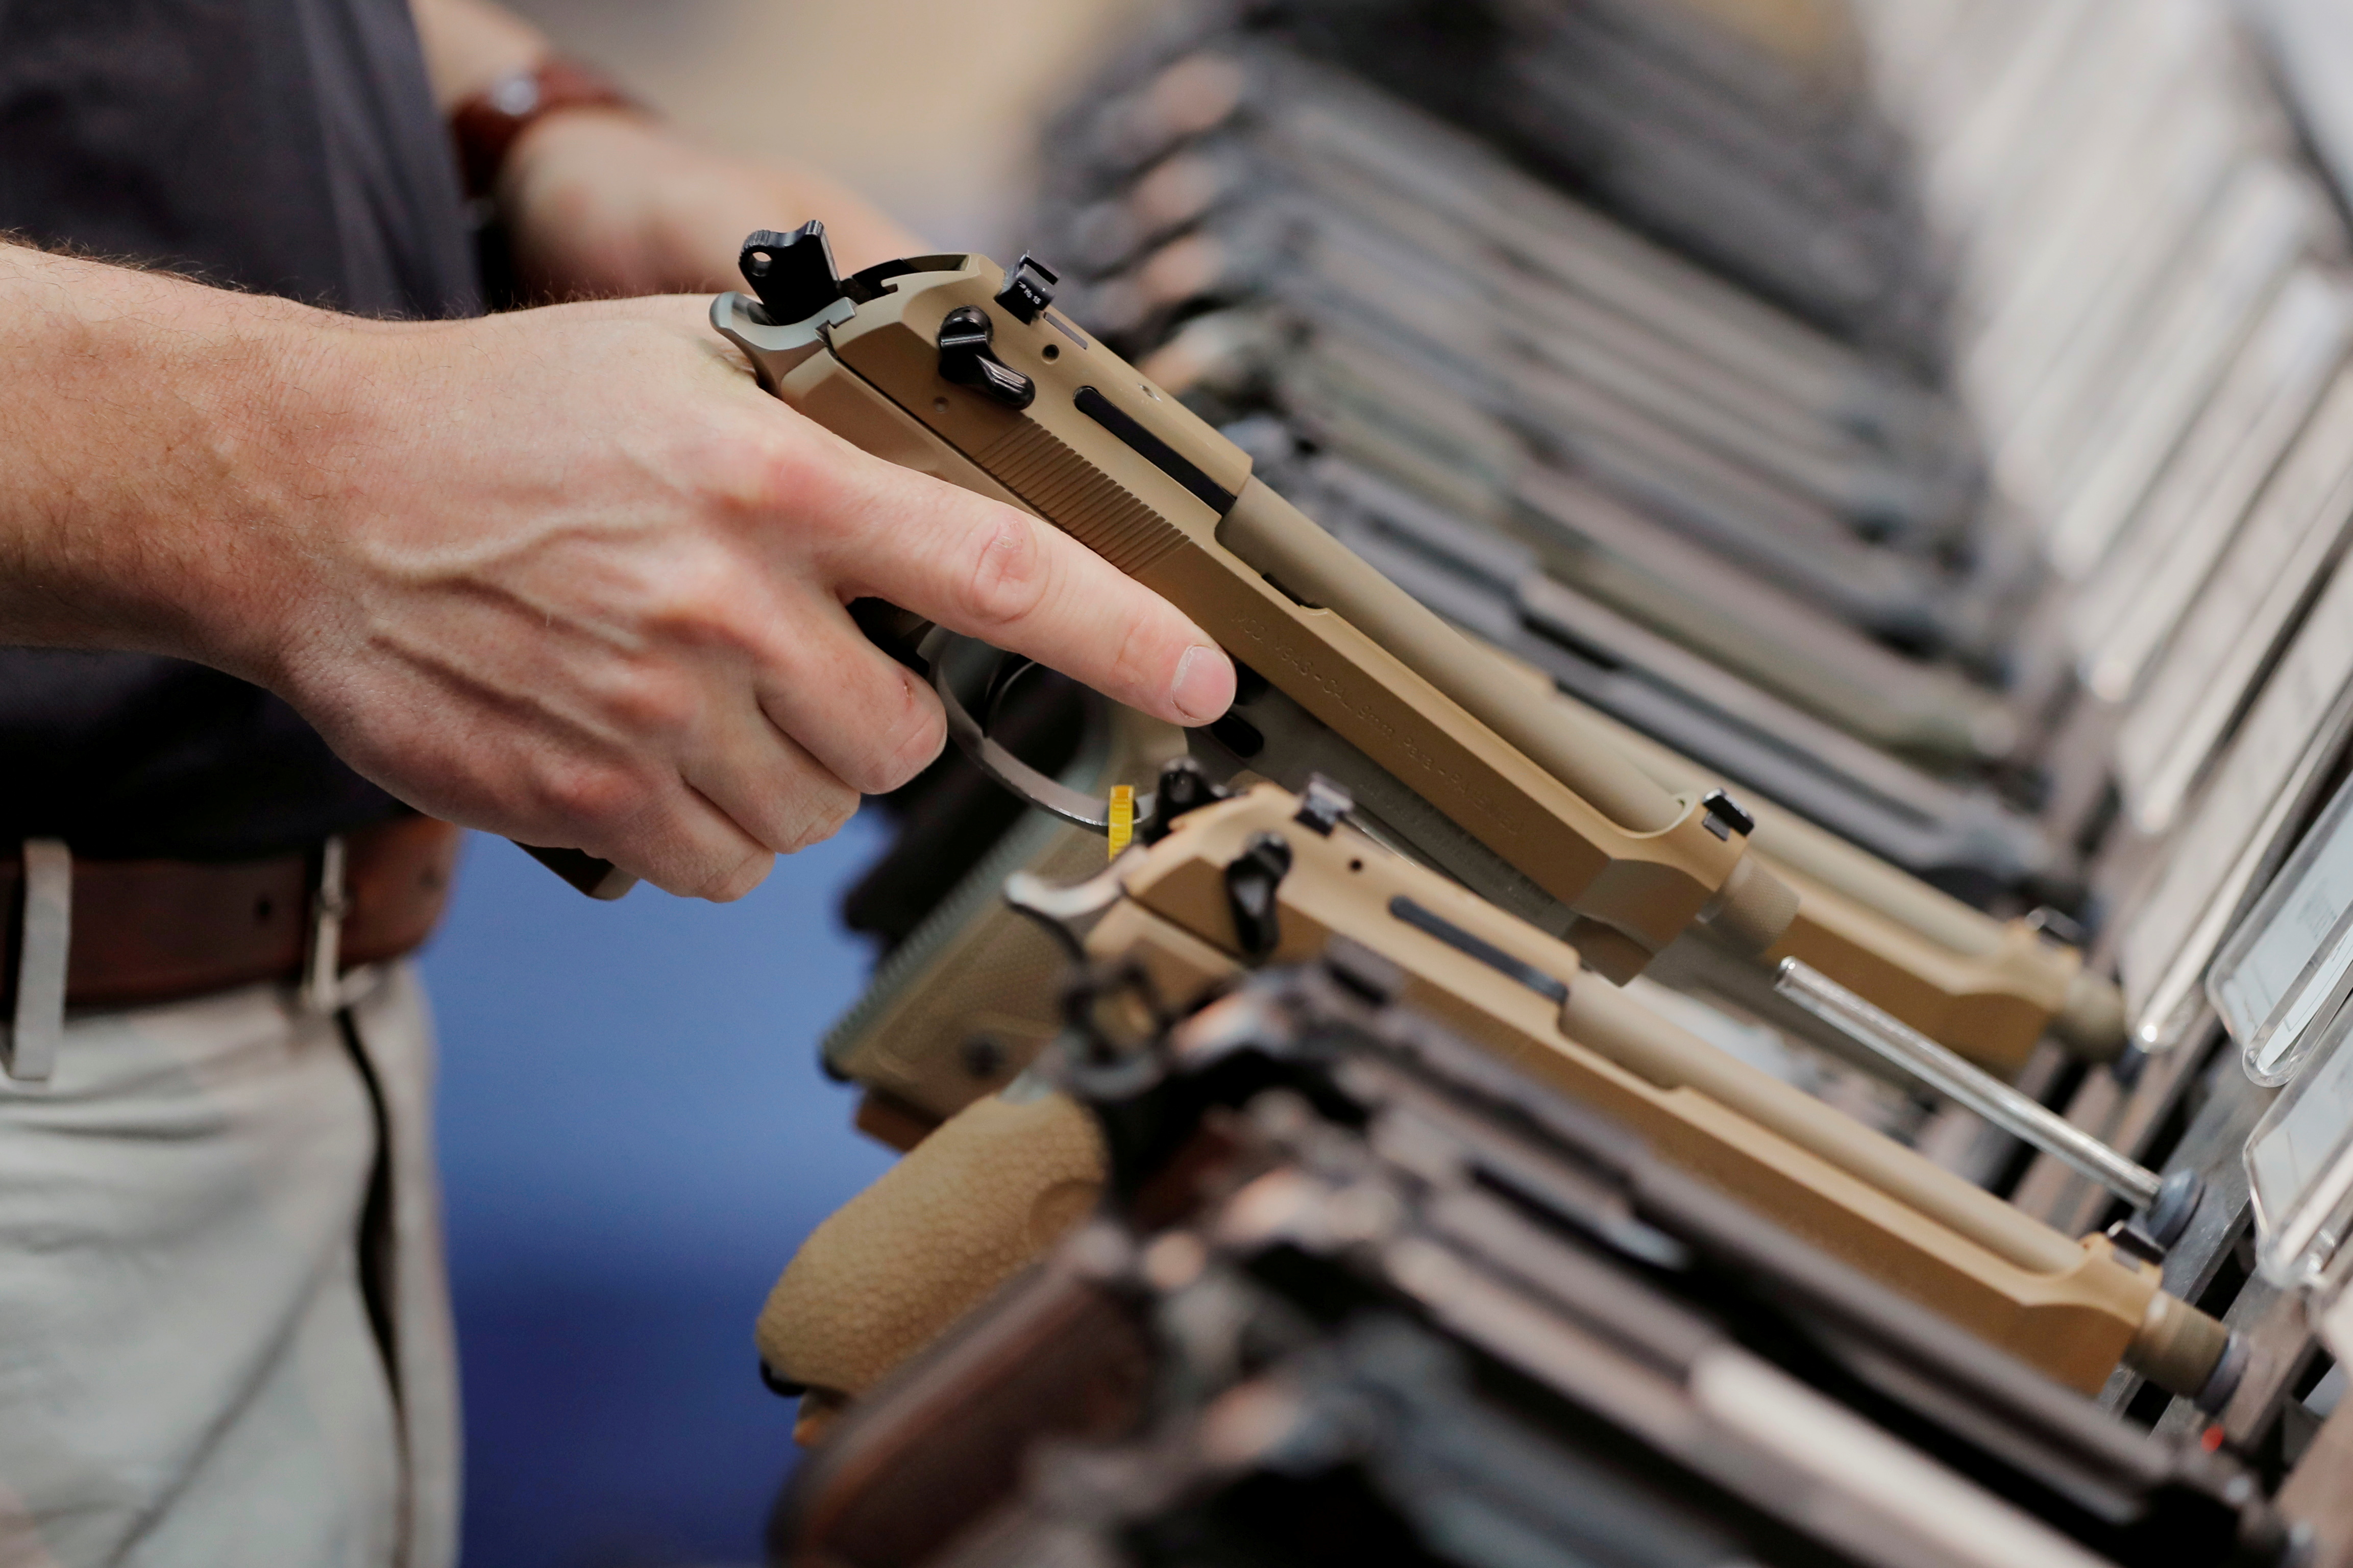 El presidente Biden, funcionarios demócratas y organizaciones civiles exigen más controles a la venta de armas (REUTERS/Lucas Jackson)